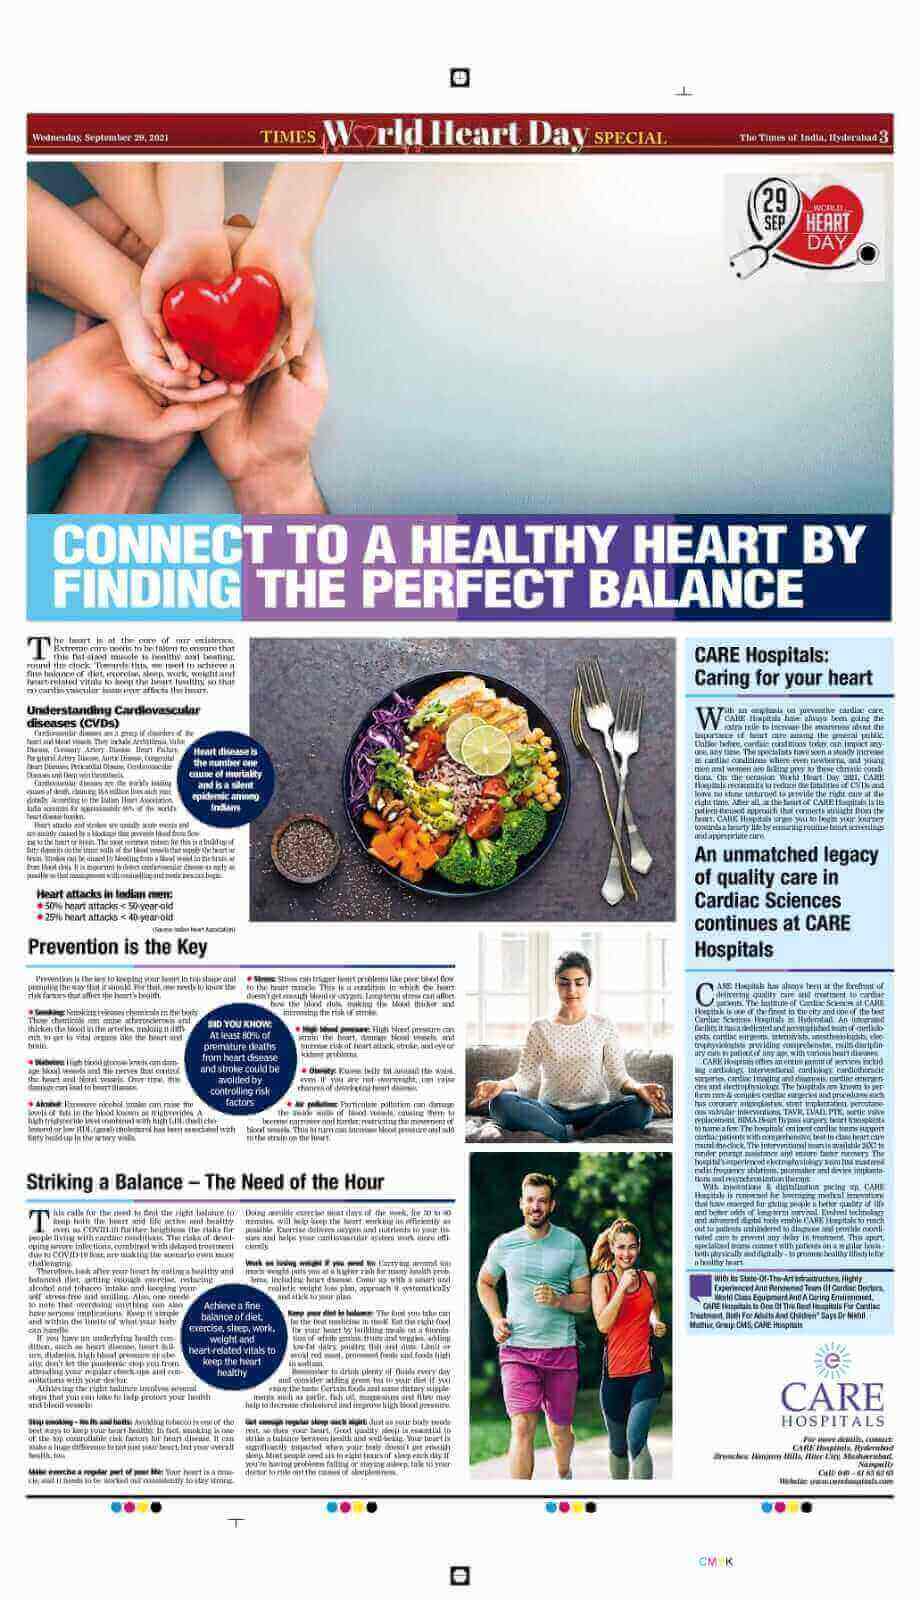 ارتبط بصحة القلب. مقال بمناسبة يوم القلب العالمي 2021 بواسطة Times of India